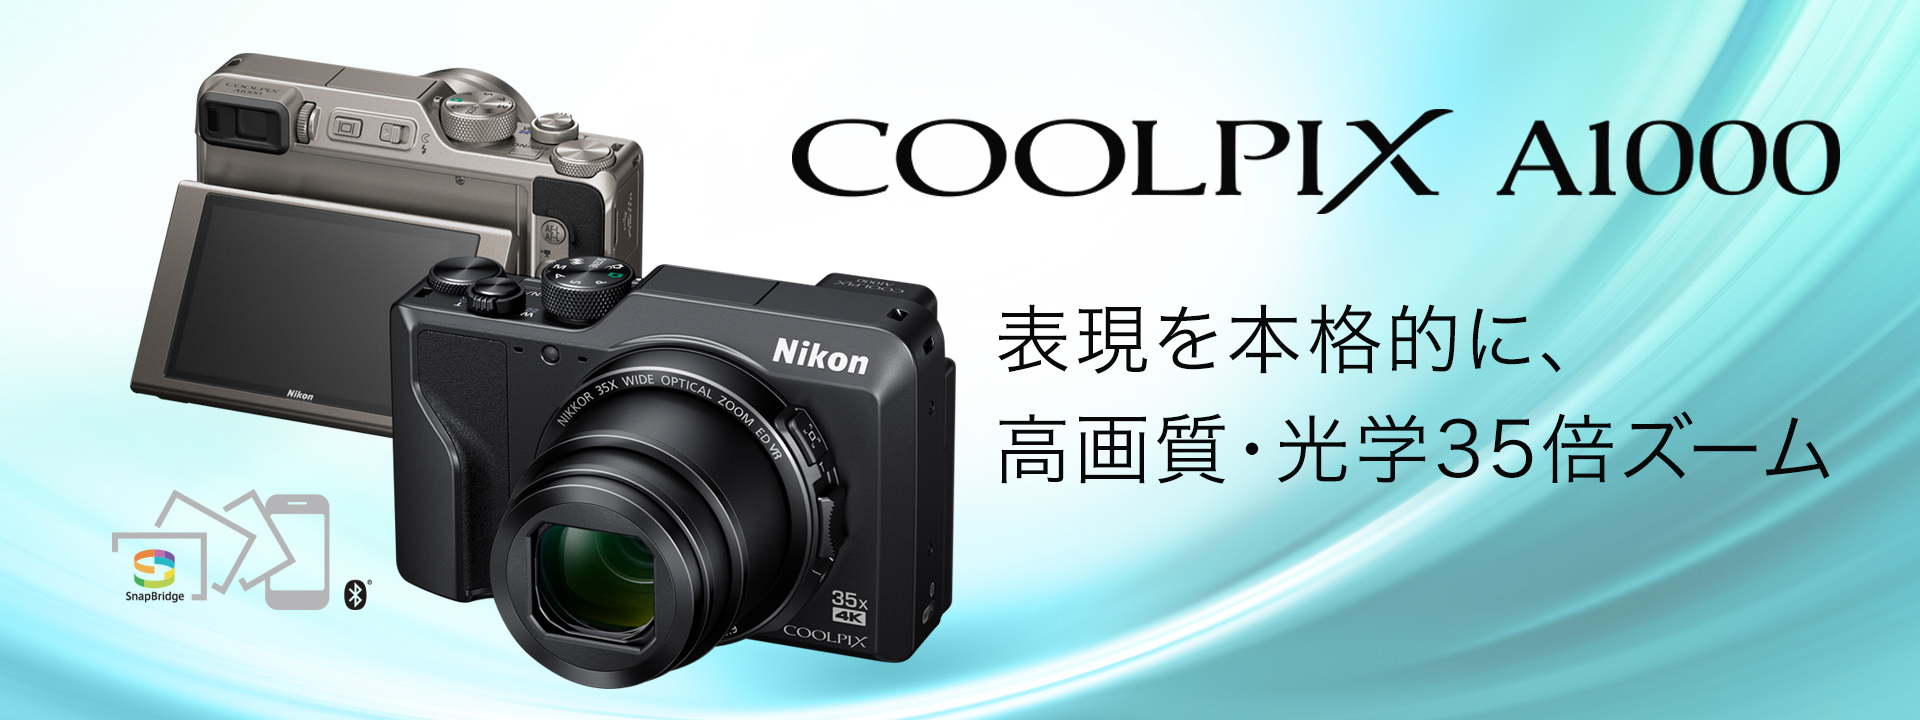 おまけ付き Nikon COOLPIX A1000 ニコン デジタルカメラ-